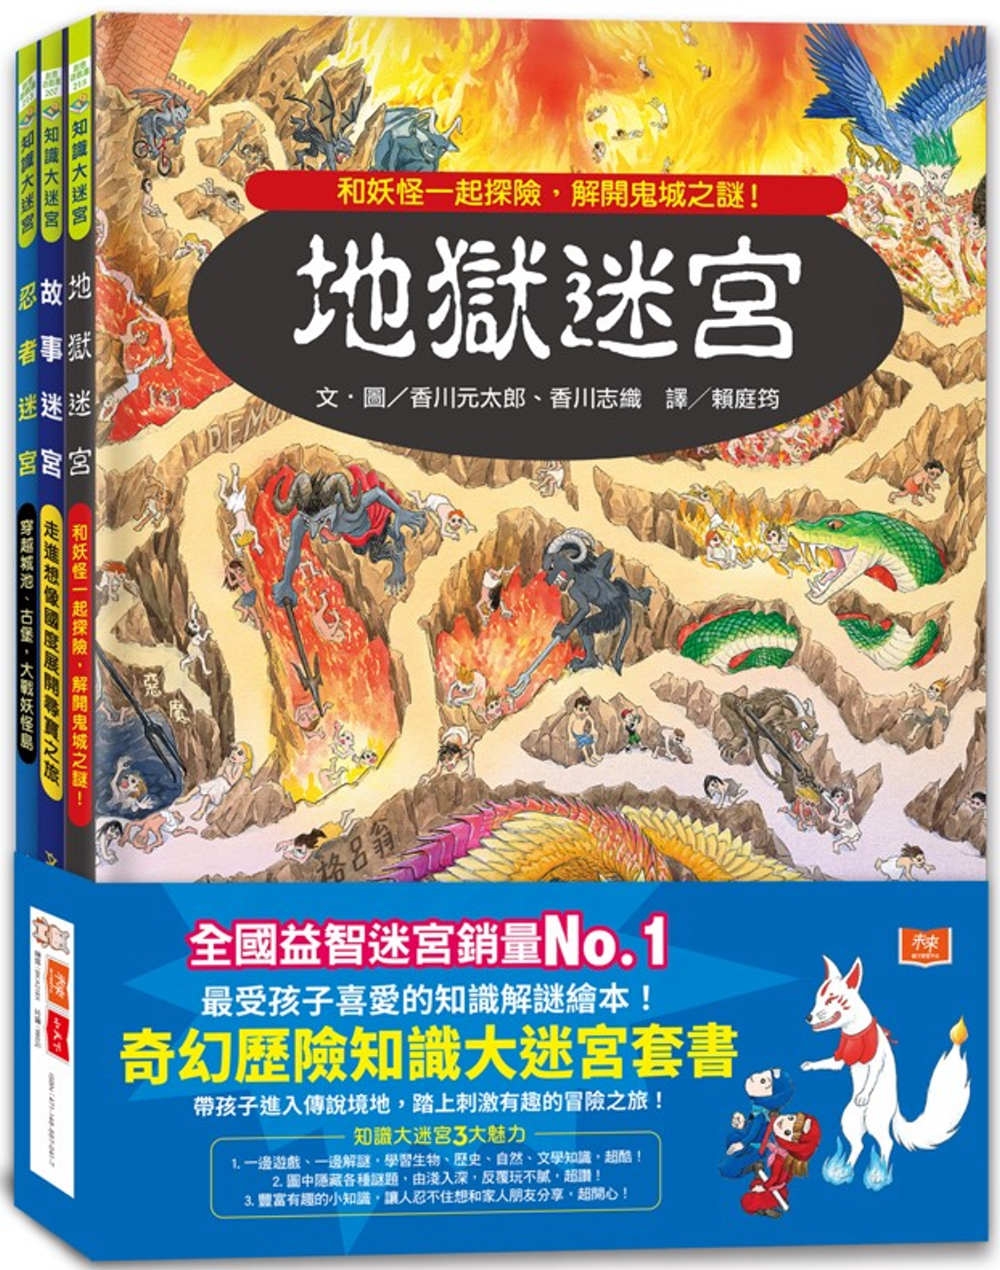 奇幻歷險知識大迷宮套書：帶孩子進入傳說境地，踏上刺激有趣的冒險之旅!